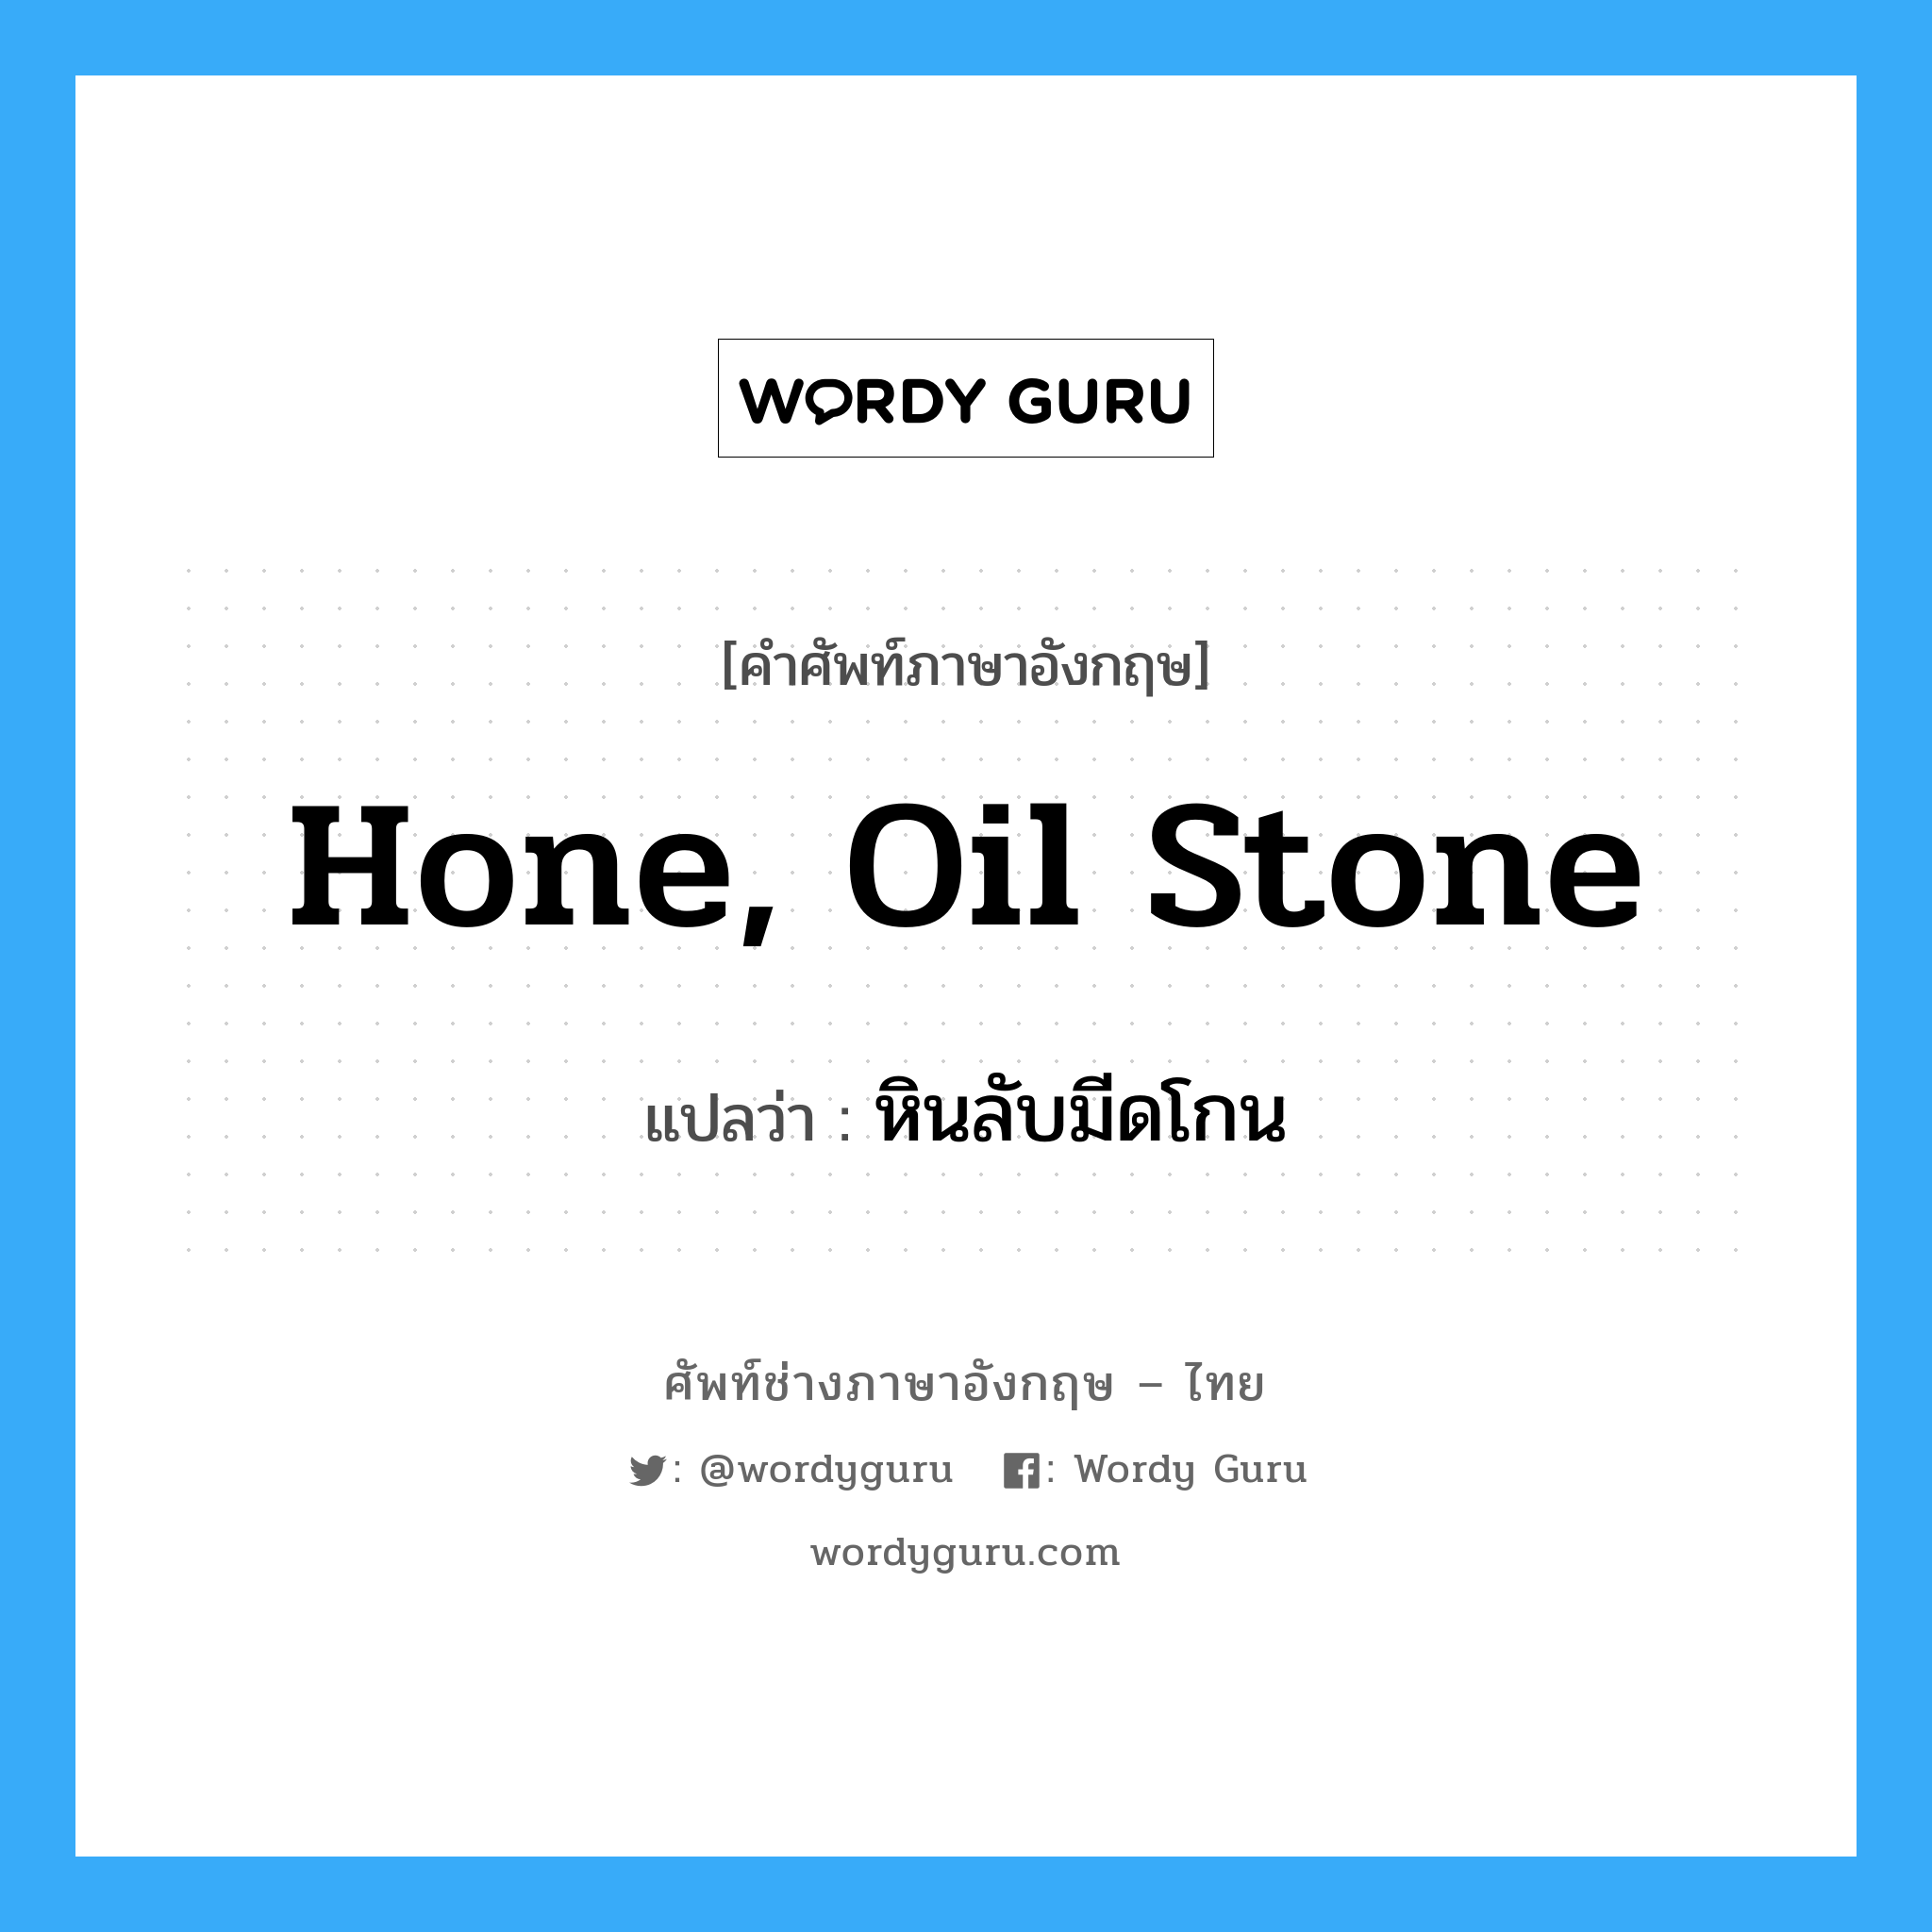 hone, oil stone แปลว่า?, คำศัพท์ช่างภาษาอังกฤษ - ไทย hone, oil stone คำศัพท์ภาษาอังกฤษ hone, oil stone แปลว่า หินลับมีดโกน